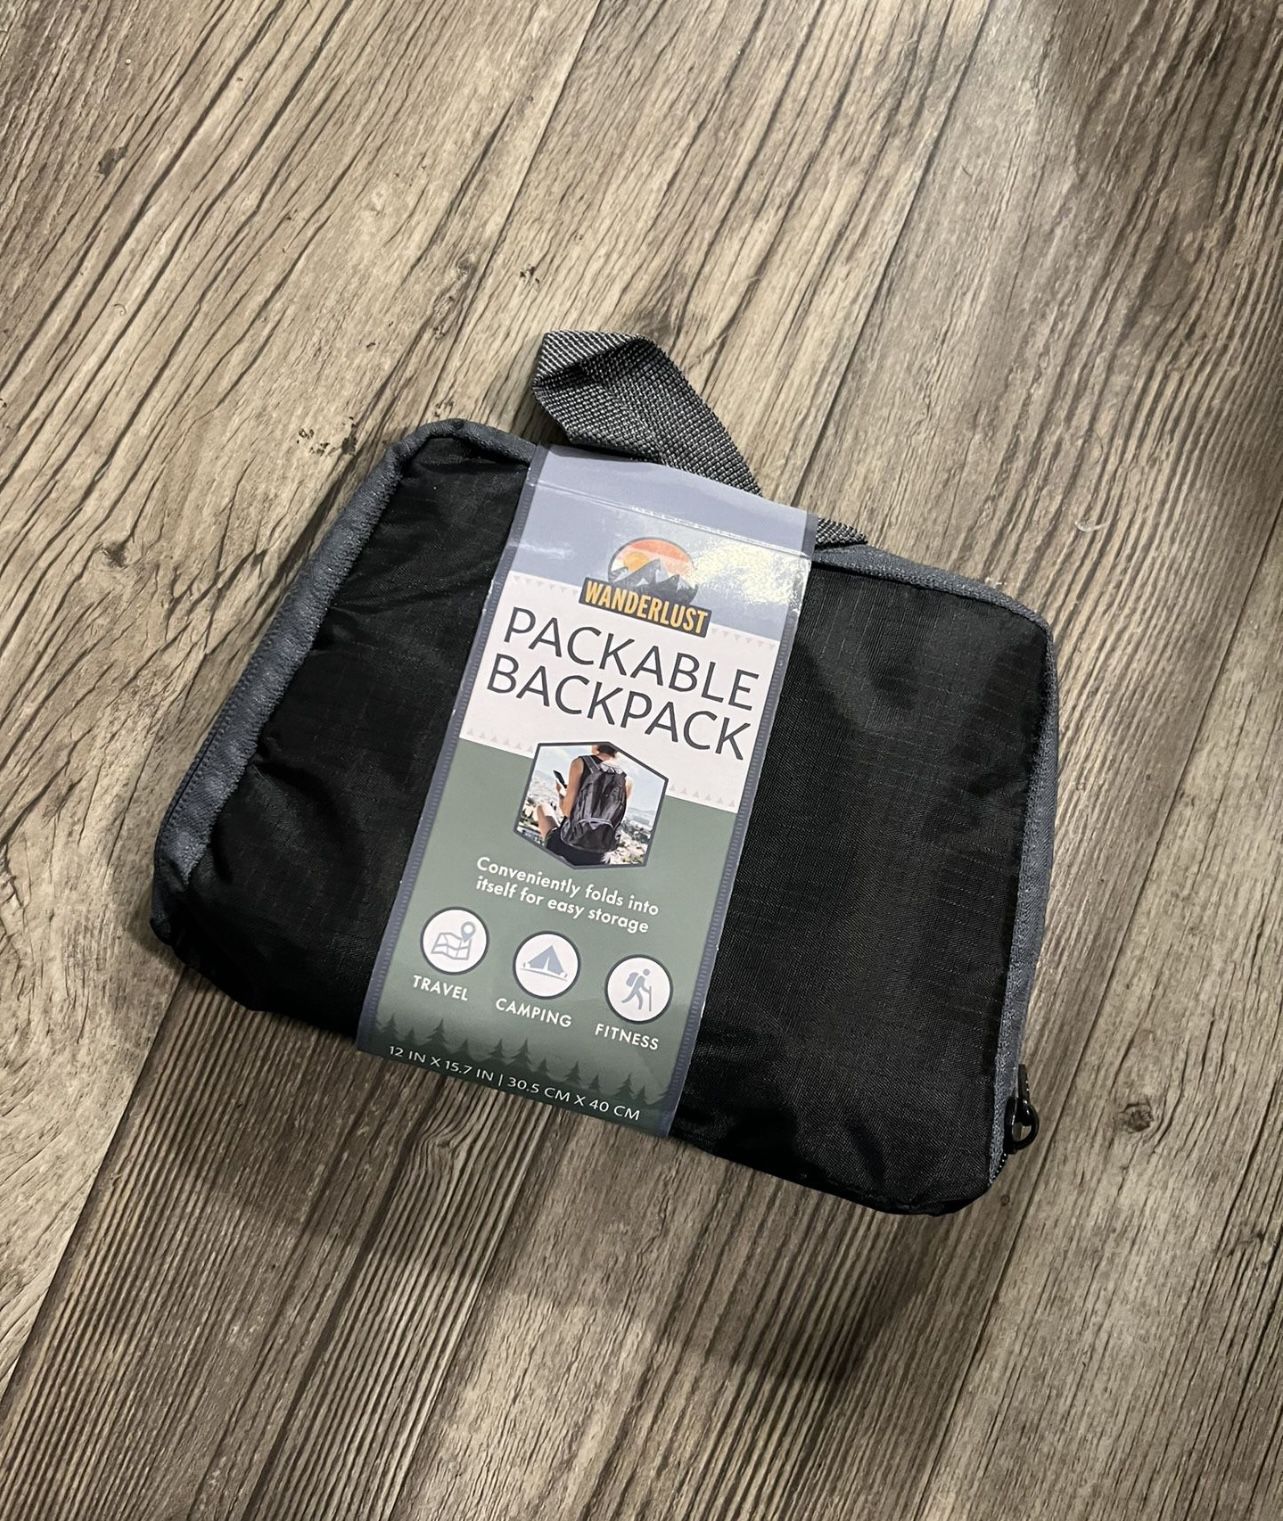 Wanderlust Packable Backpack